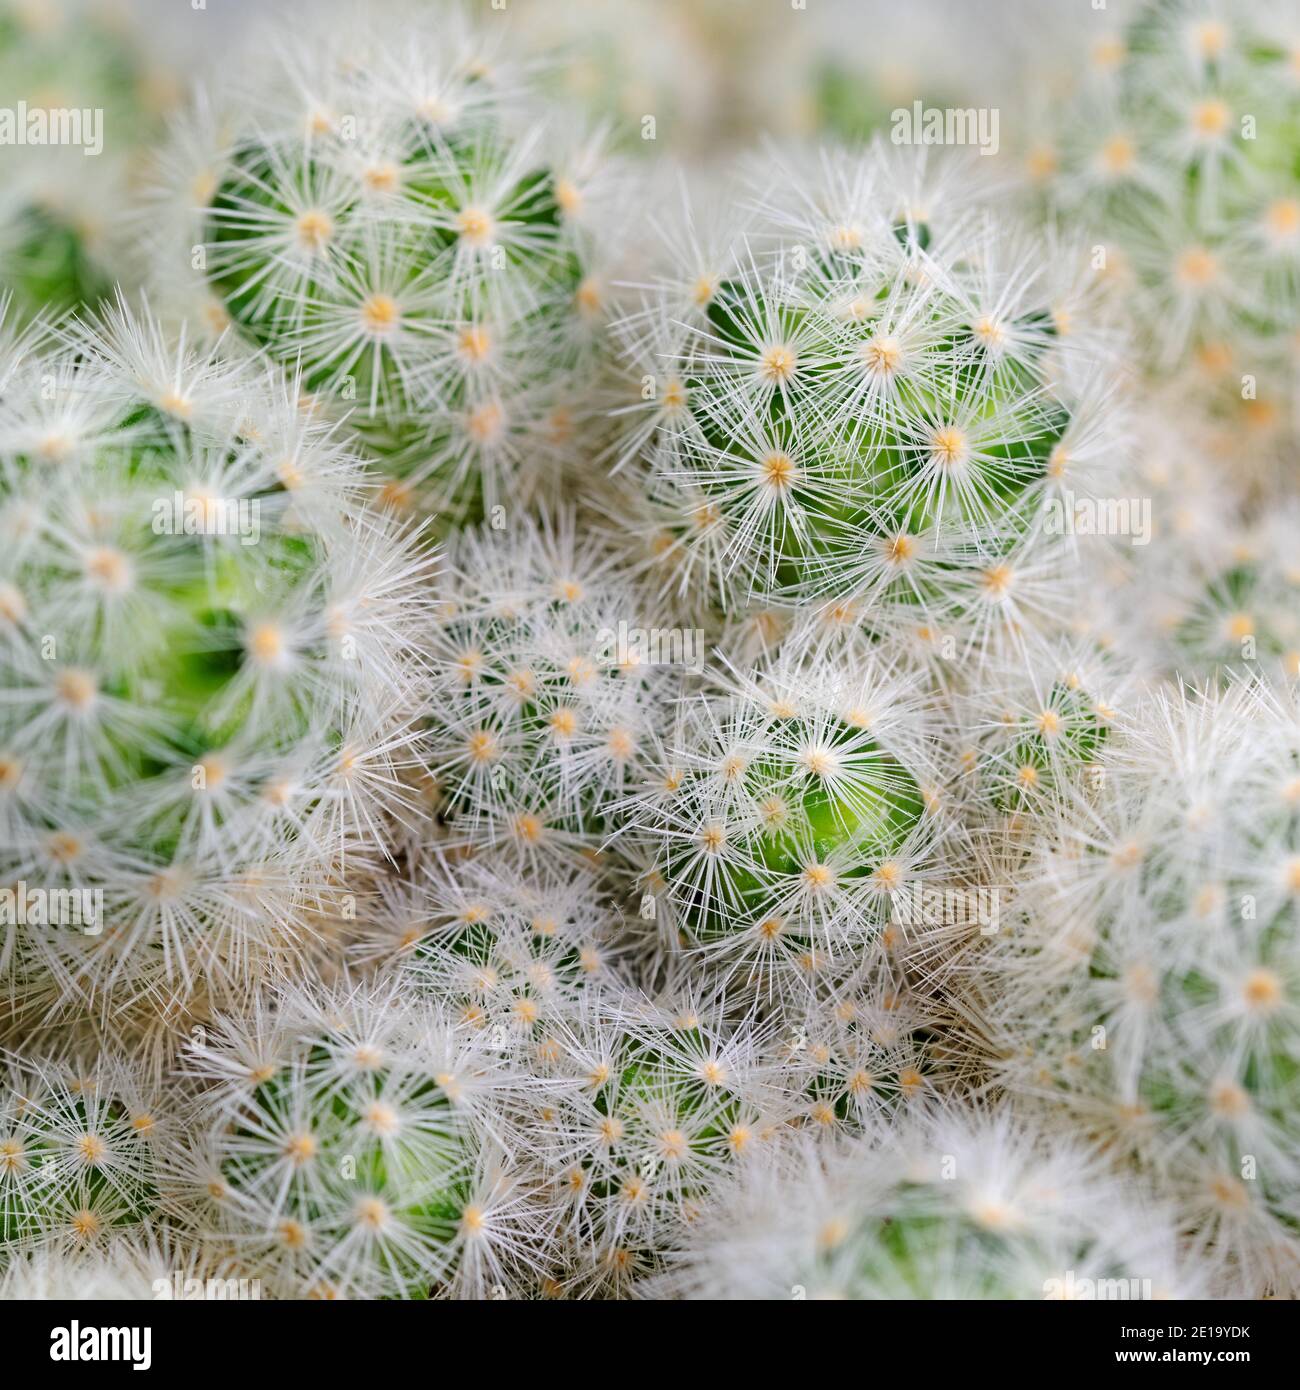 Cacti, Escobaria sneedii, in a close-up Stock Photo